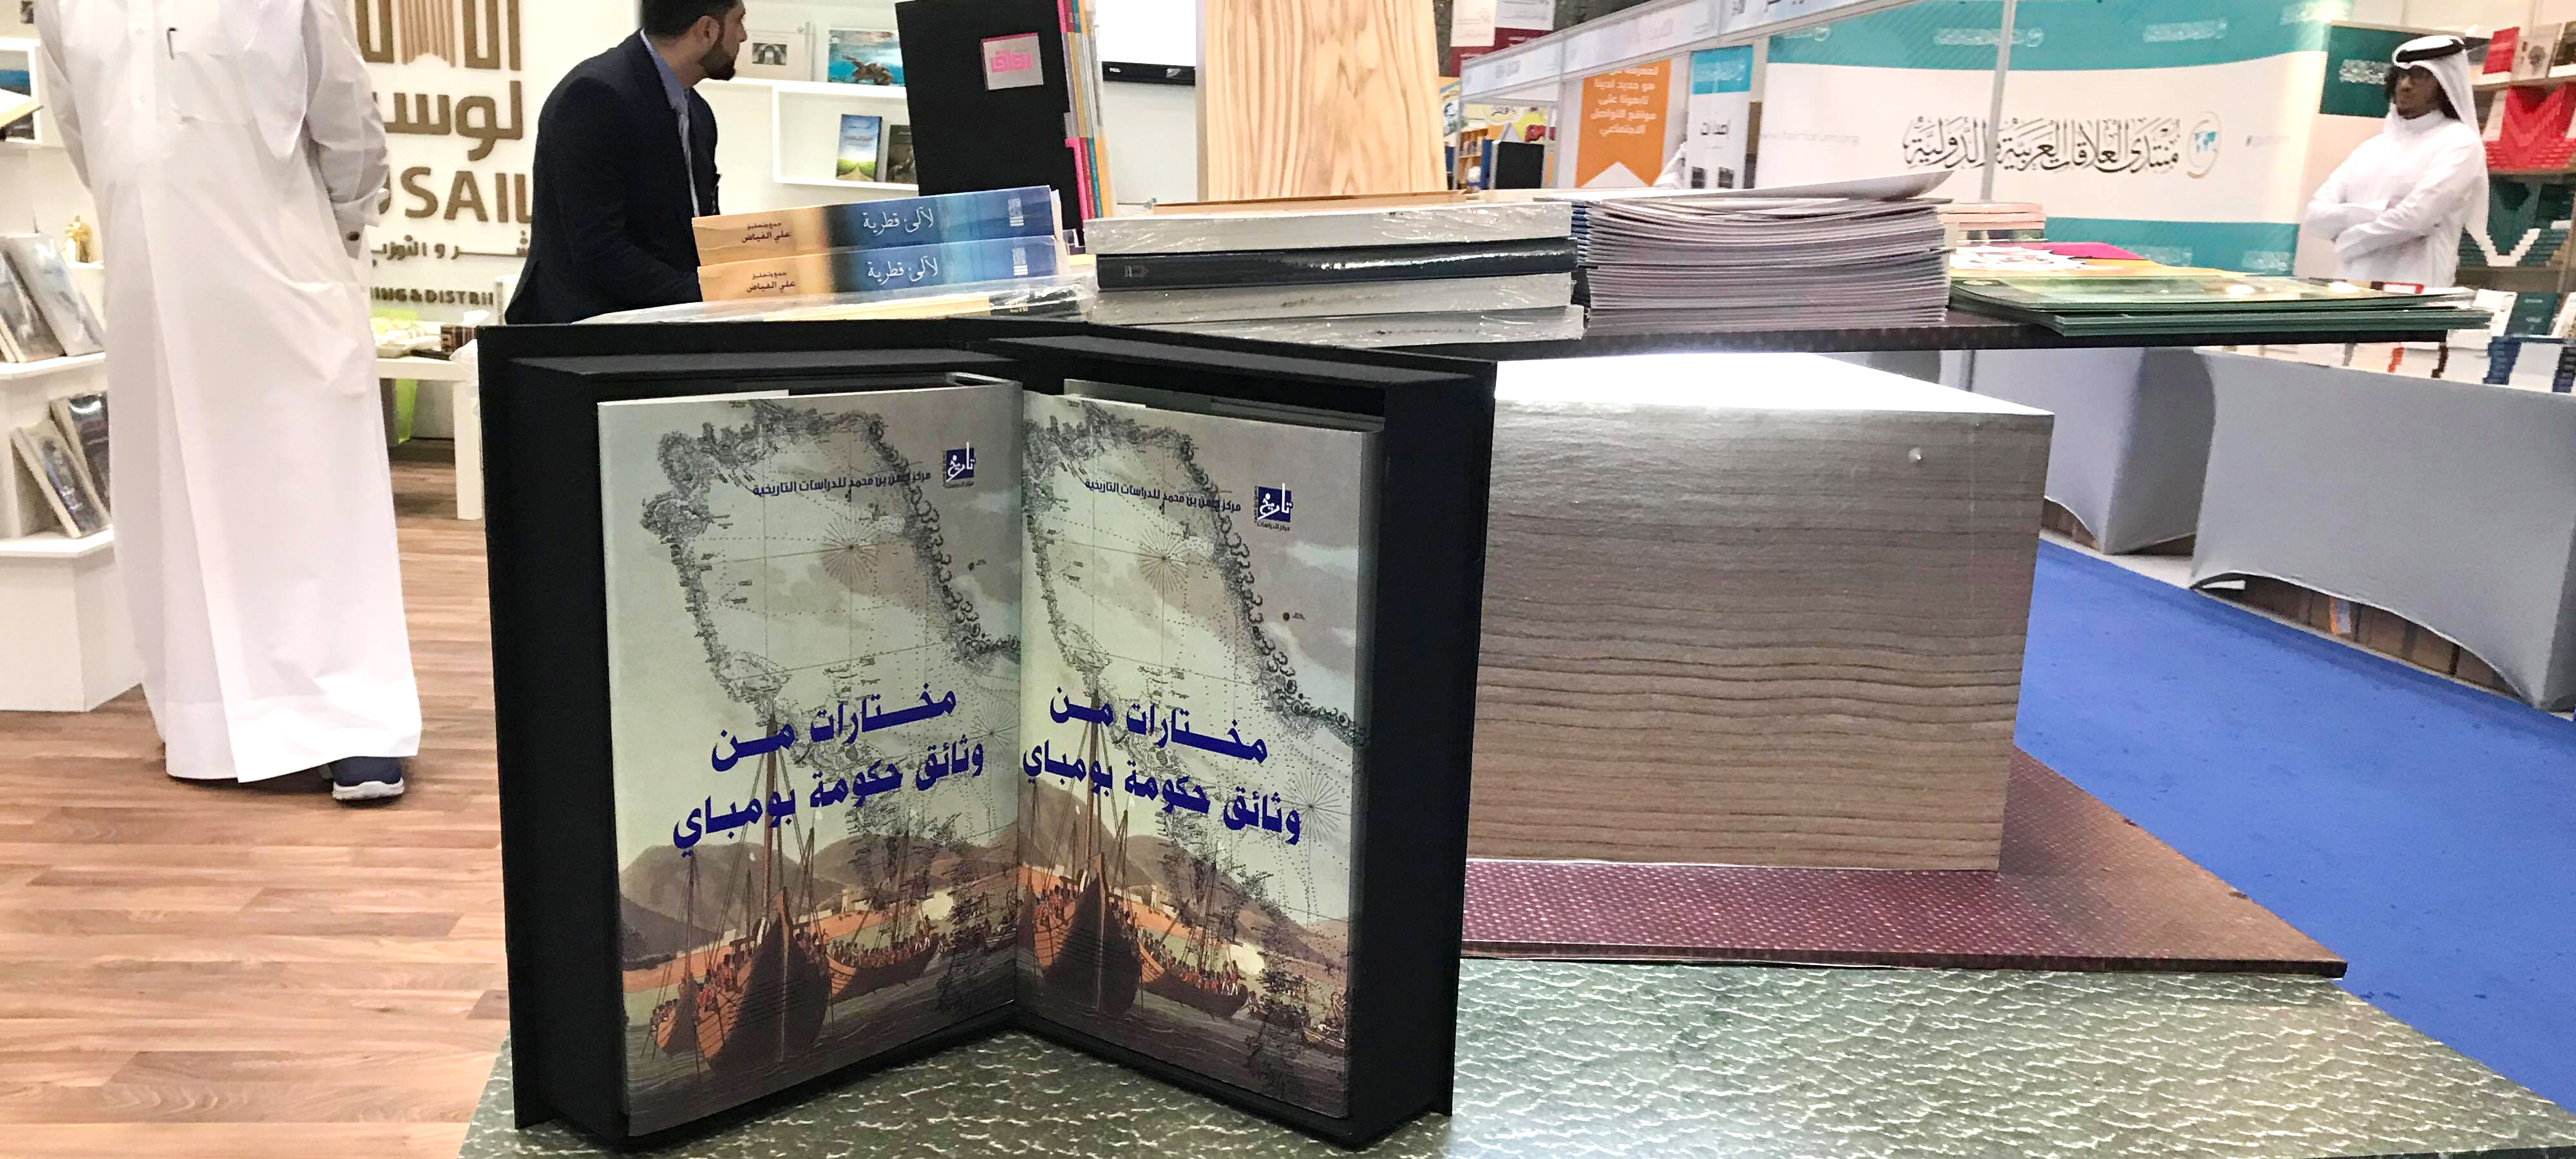 المركز يشارك بإصداراته في معرض الدوحة الدولي للكتاب التاسع والعشرين (ديسمبر 2018)